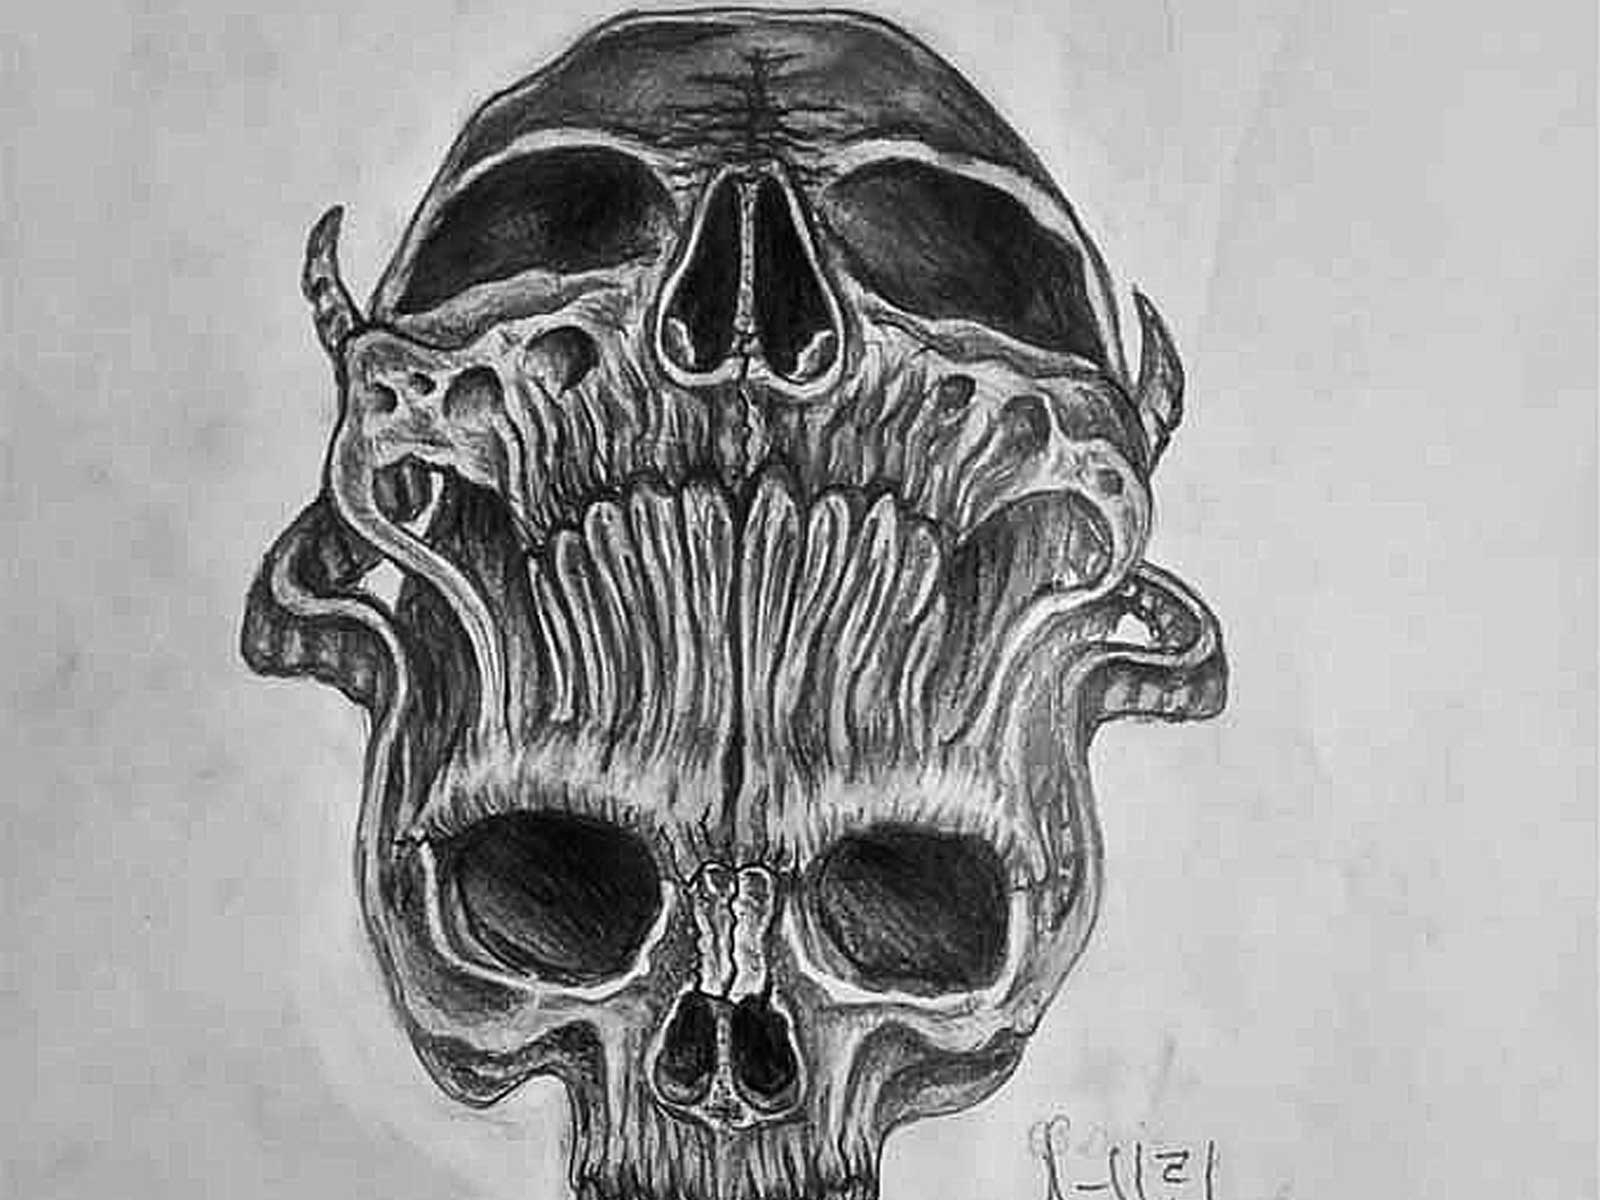 Skeleton Drawing Sketching Karakalem by Hediyelik Karakalem on Dribbble